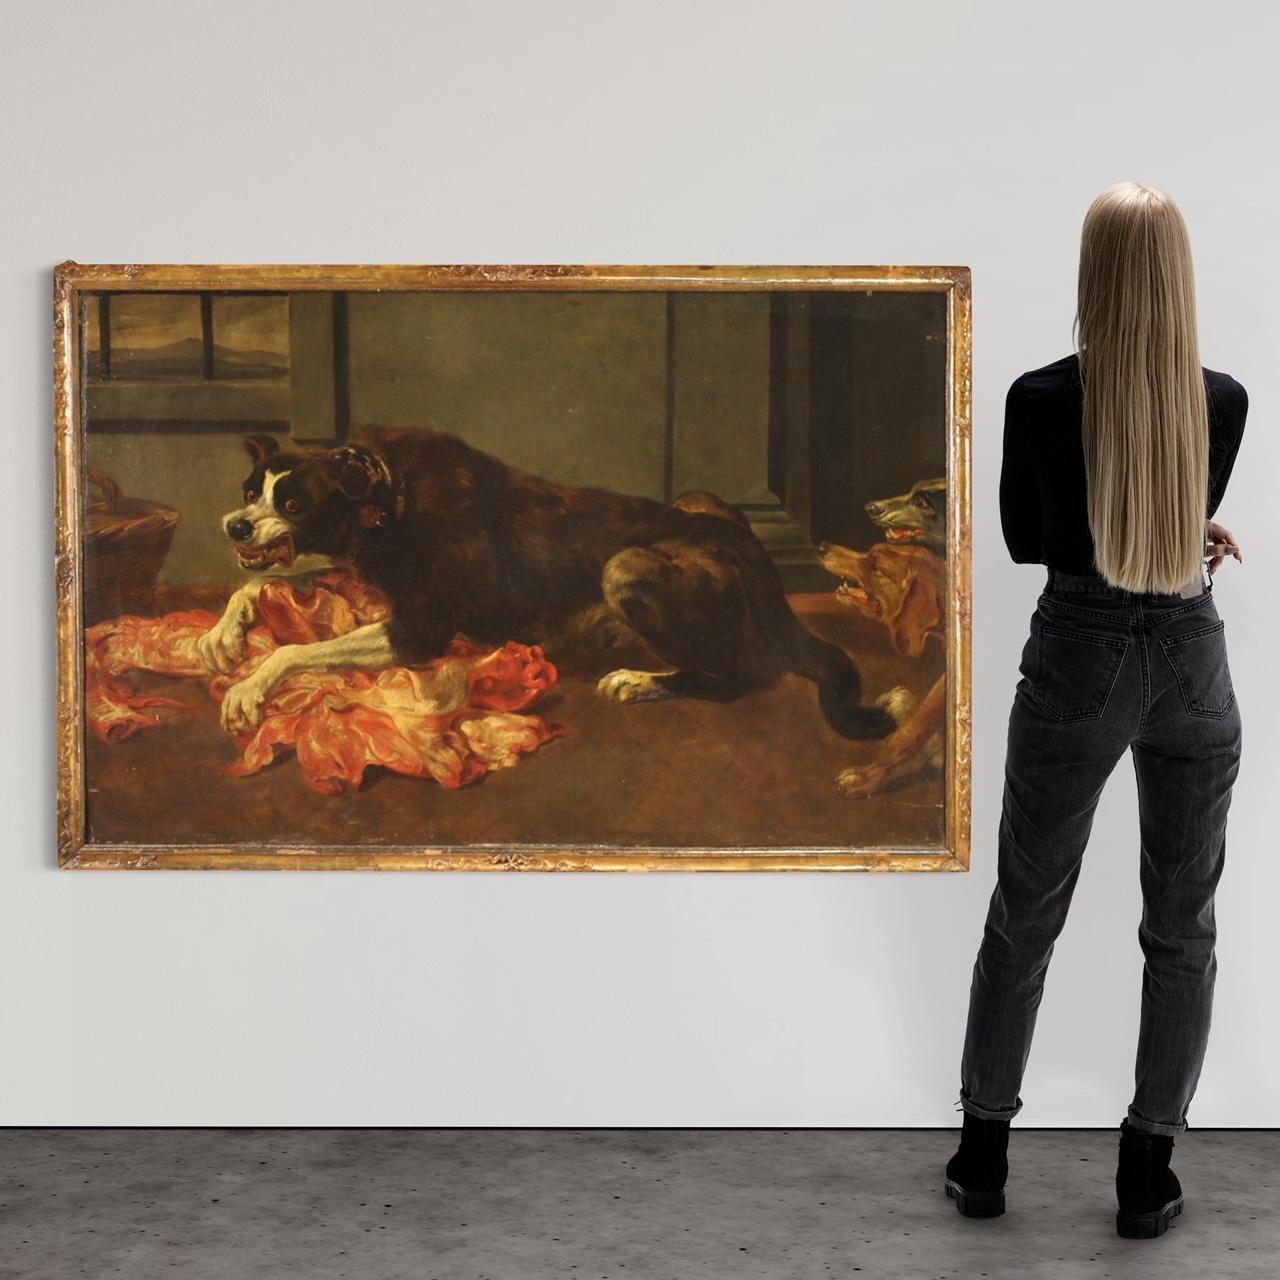 Grande peinture flamande du 17e siècle. Huile sur toile représentant une copie de la célèbre nature morte de Frans Snyders (1579-1657), un chien défendant une carcasse contre deux autres chiens. Originaire d'Anvers, il se consacre à la peinture de